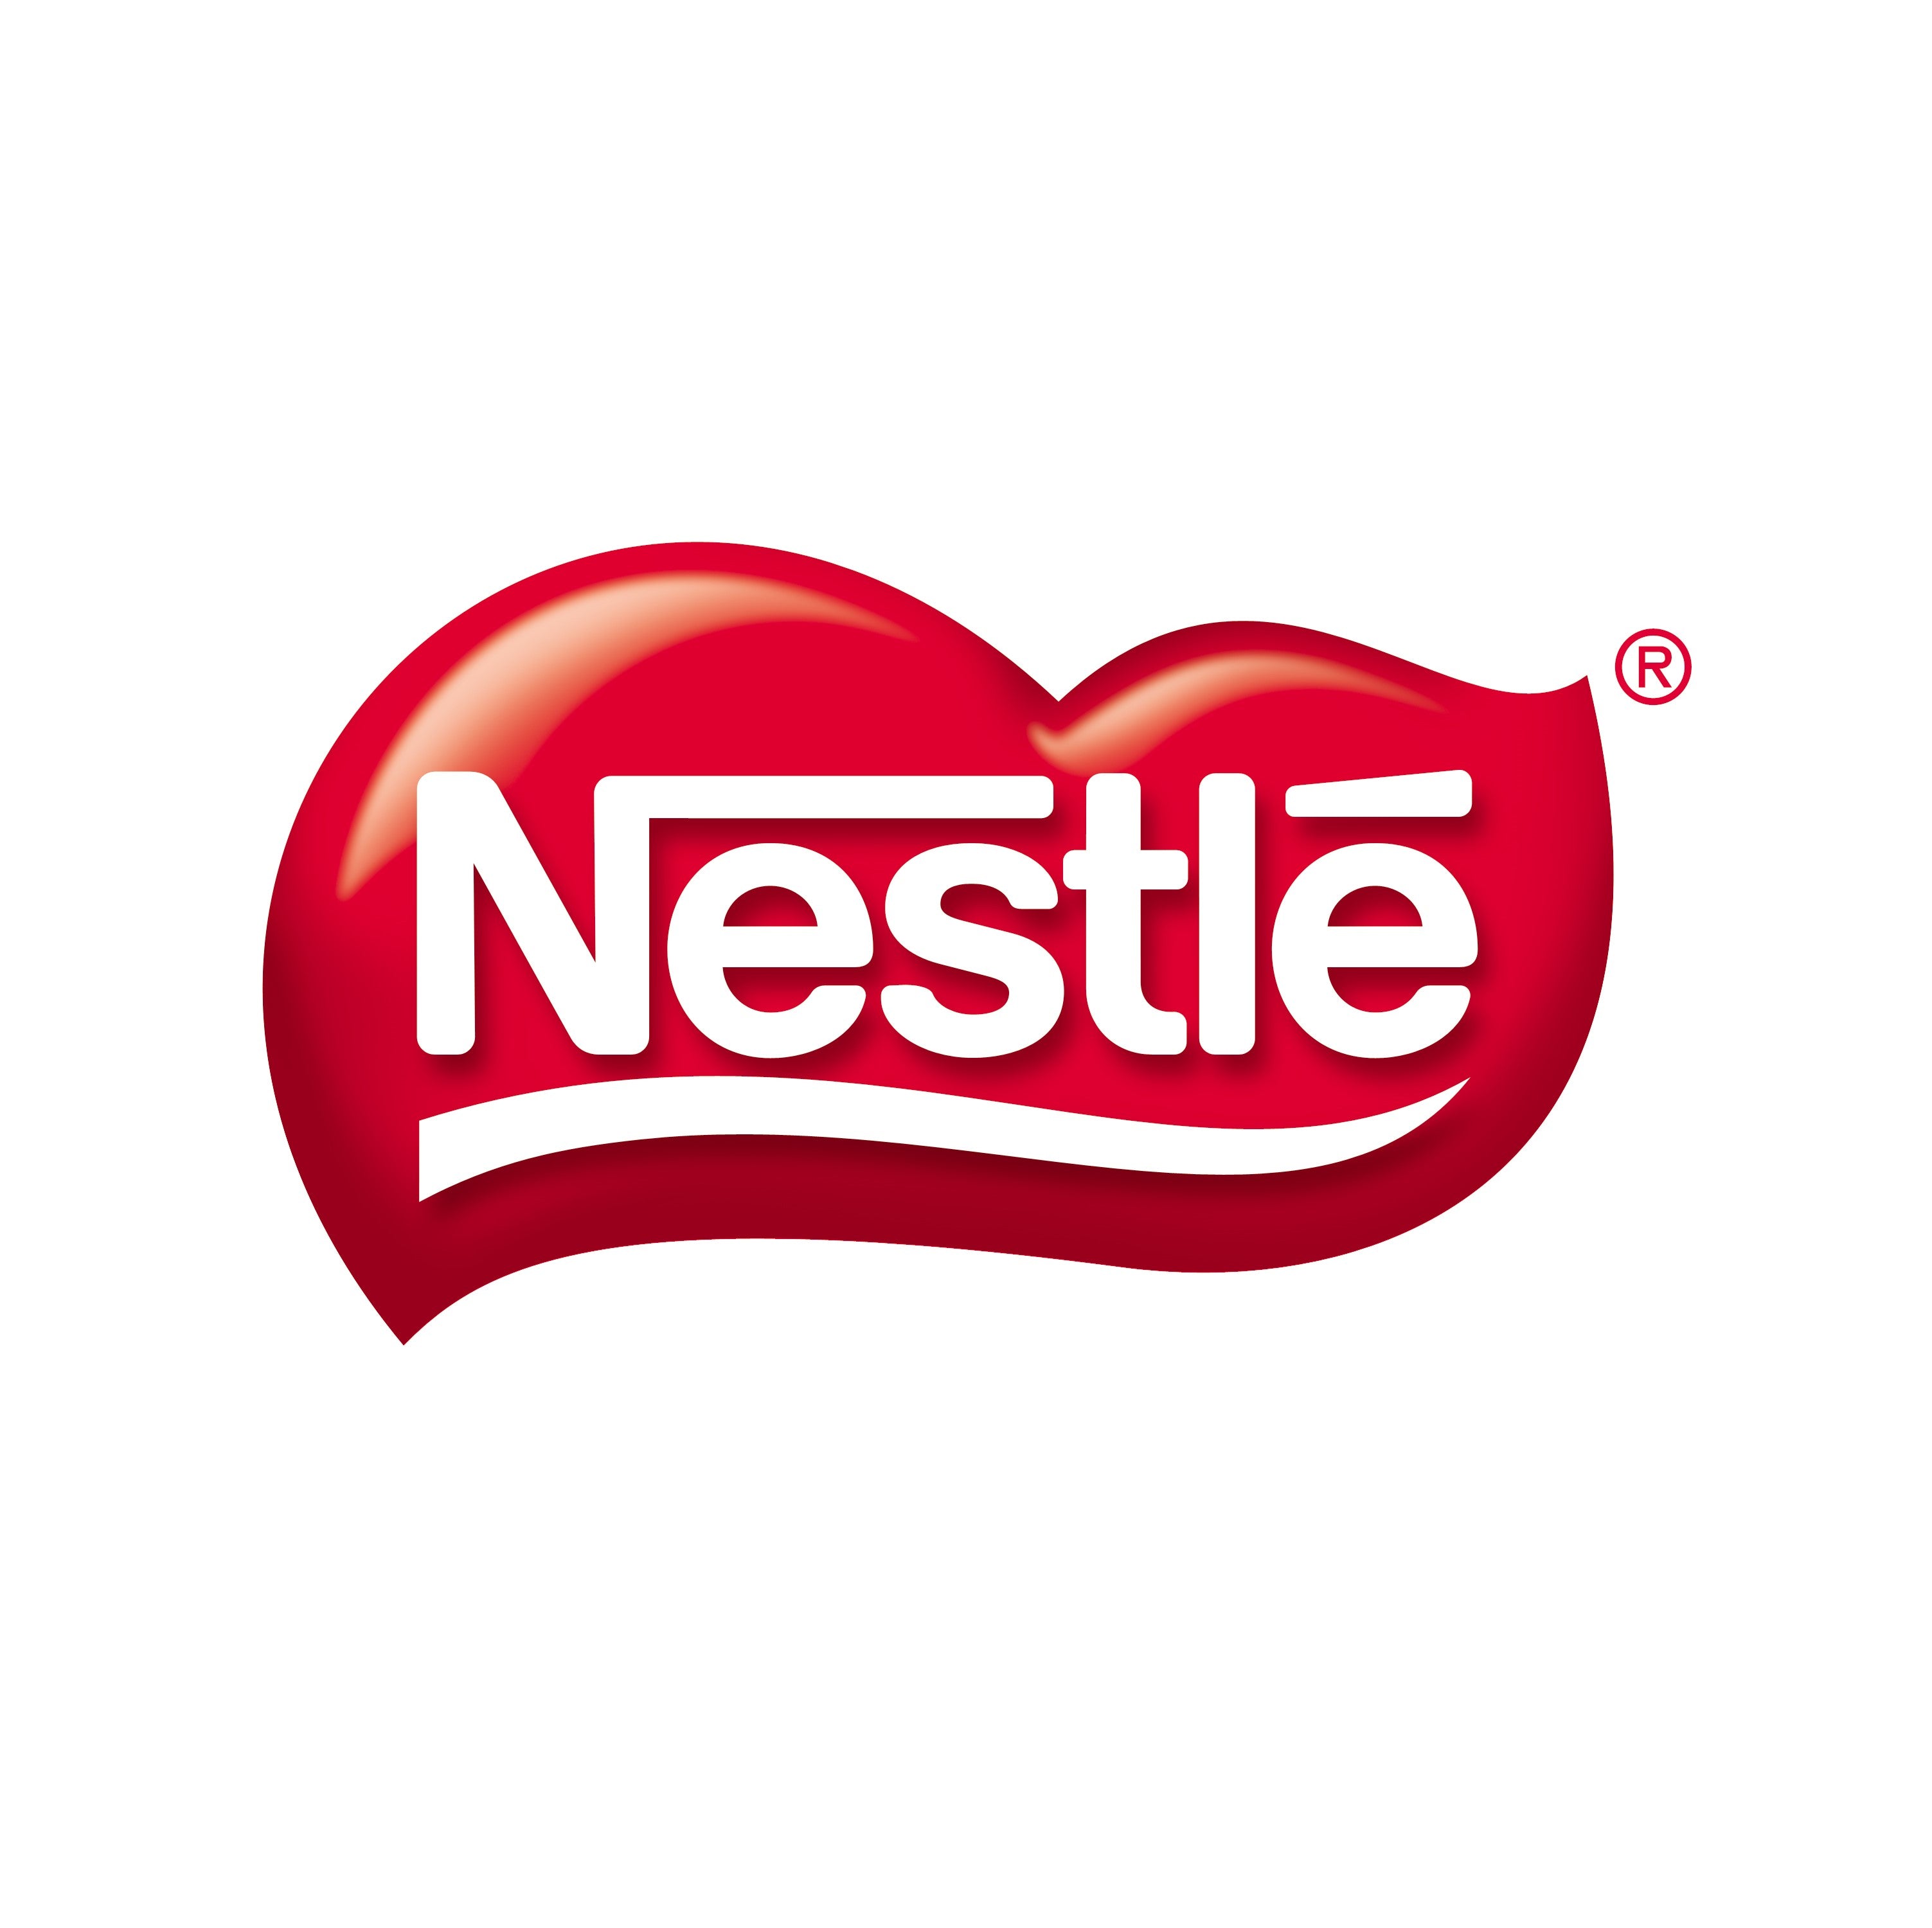 Nestlé Especialidades 251grs